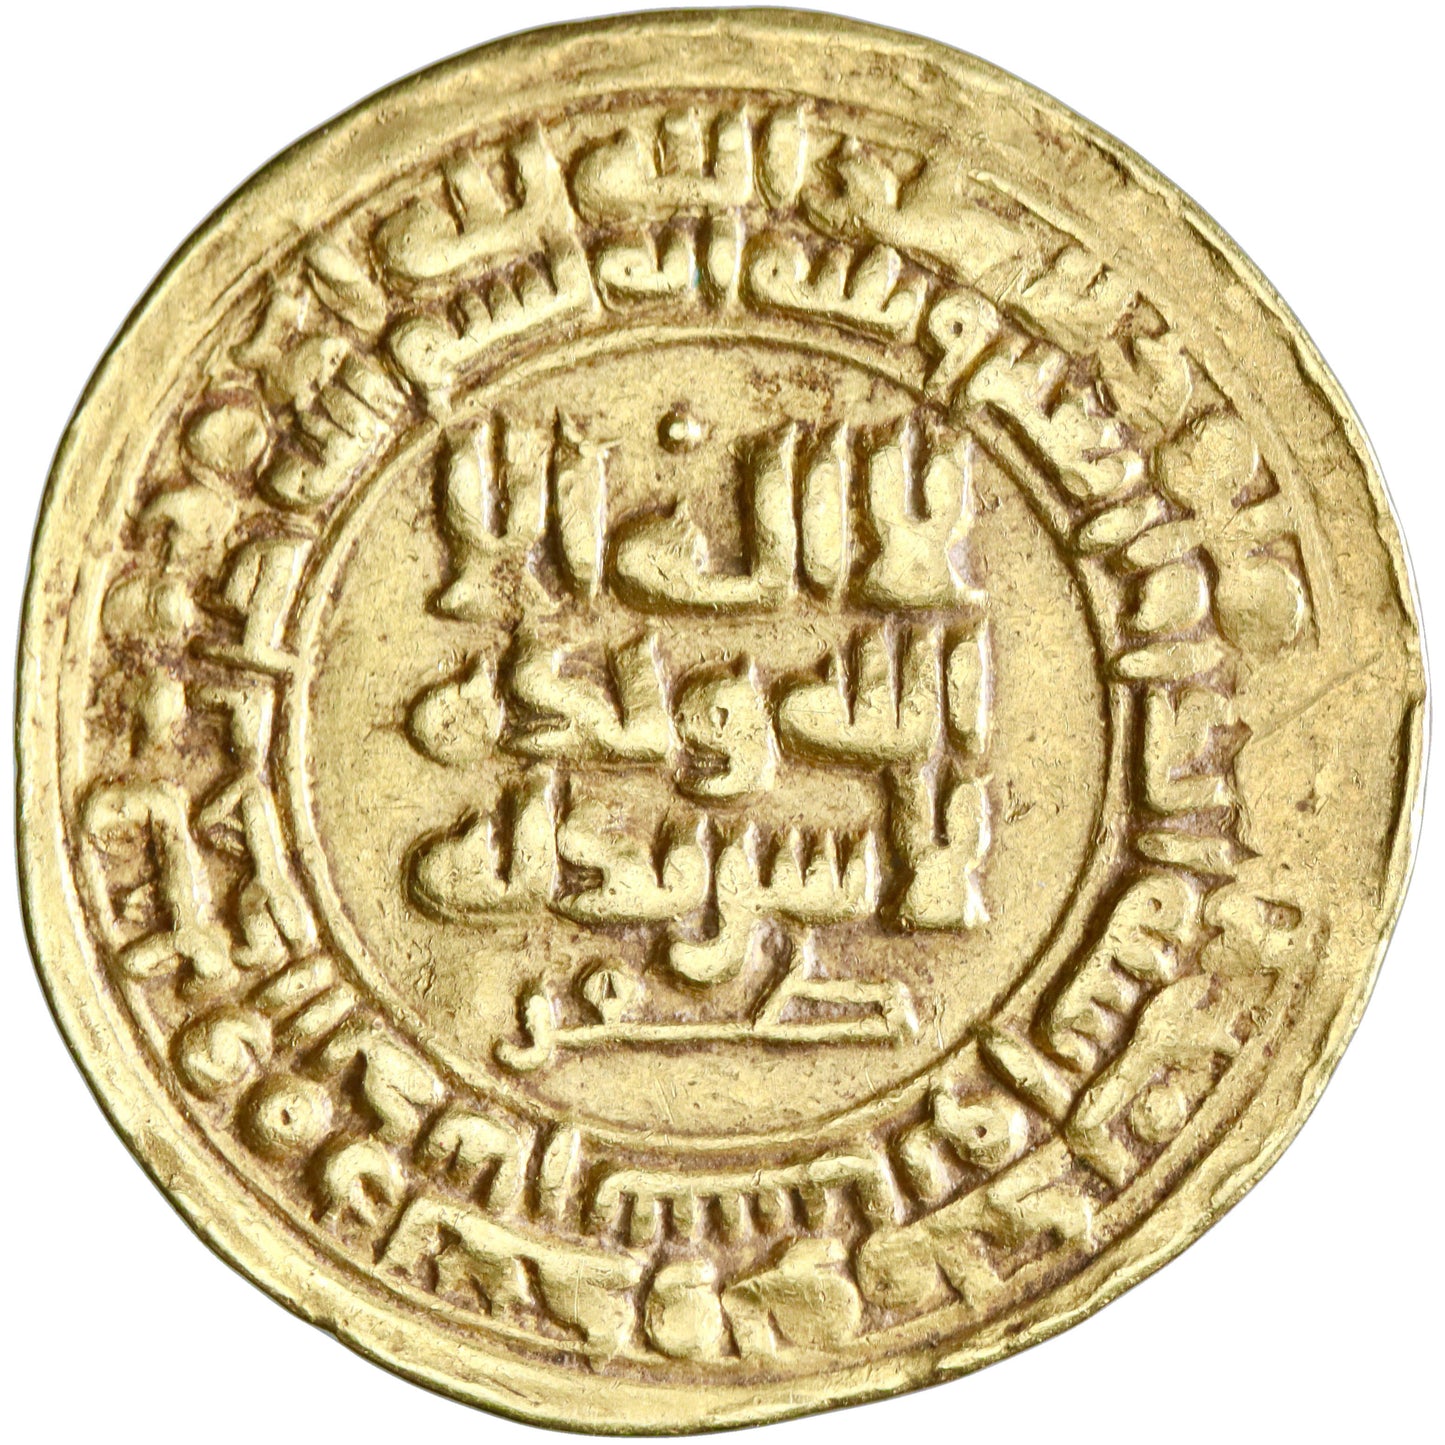 Samanid, Nuh II ibn Nasr, gold dinar, Naysabur (Nishapur) mint, AH 341, citing al-Mustakfi